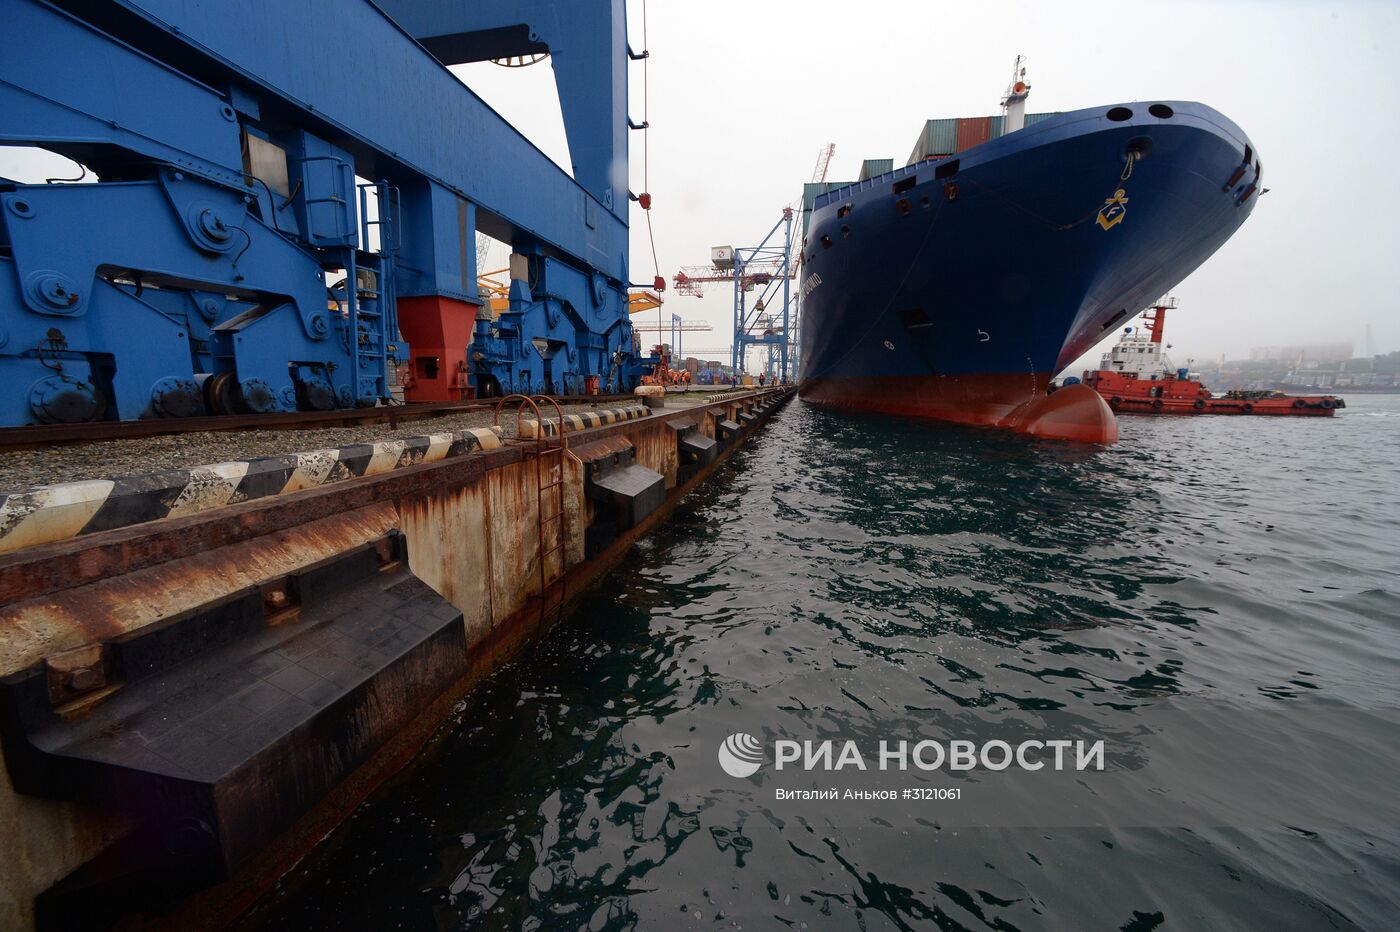 Контейнеровоз Fesco Diomid прибыл в порт Владивостока